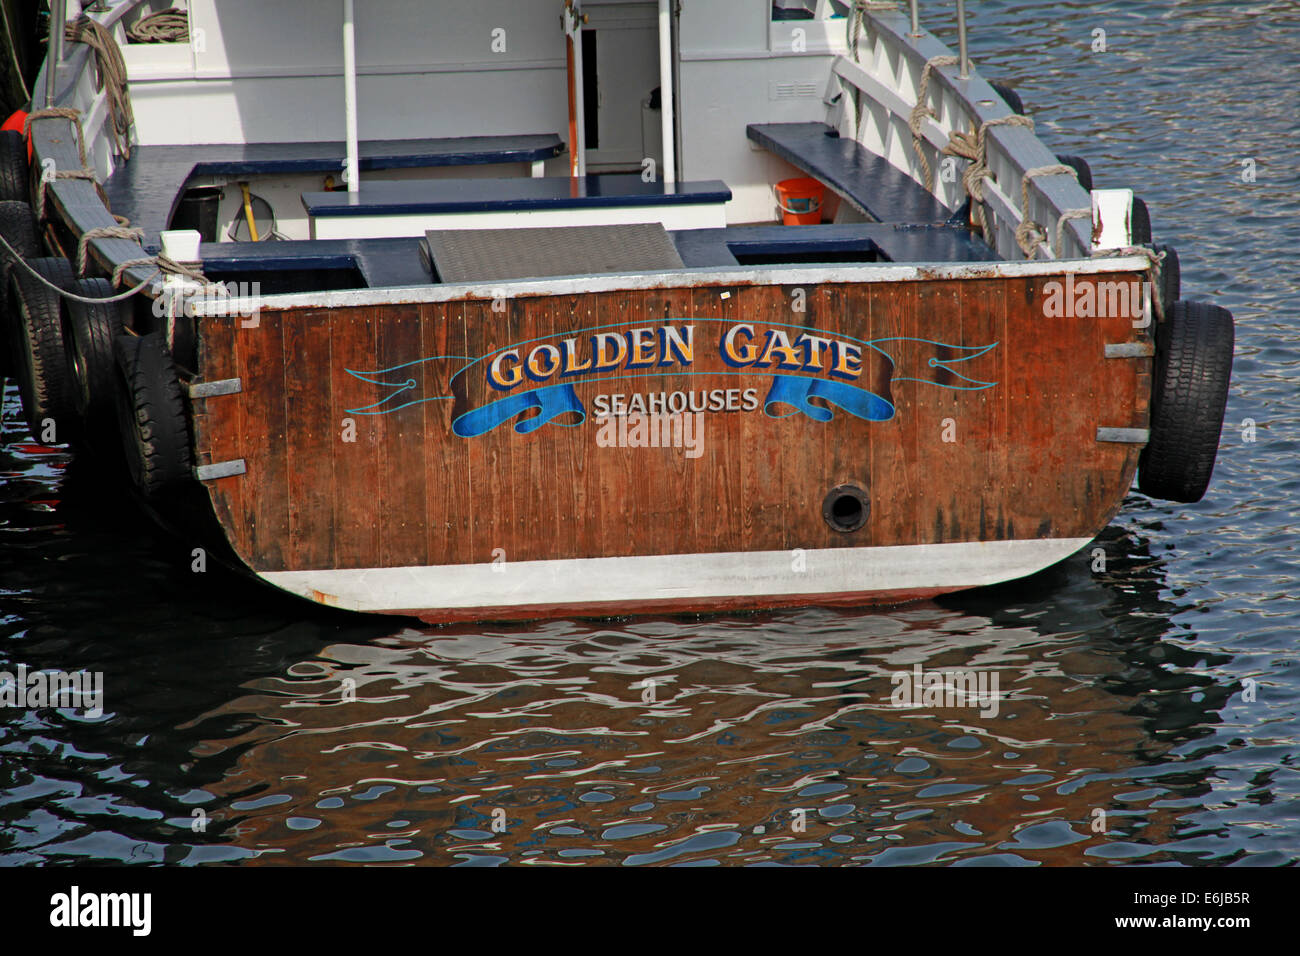 Golden Gate bateau de pêche et Farne Islands Boat Trips, à Seahouses, ne Angleterre Northumberland, Royaume-Uni Banque D'Images